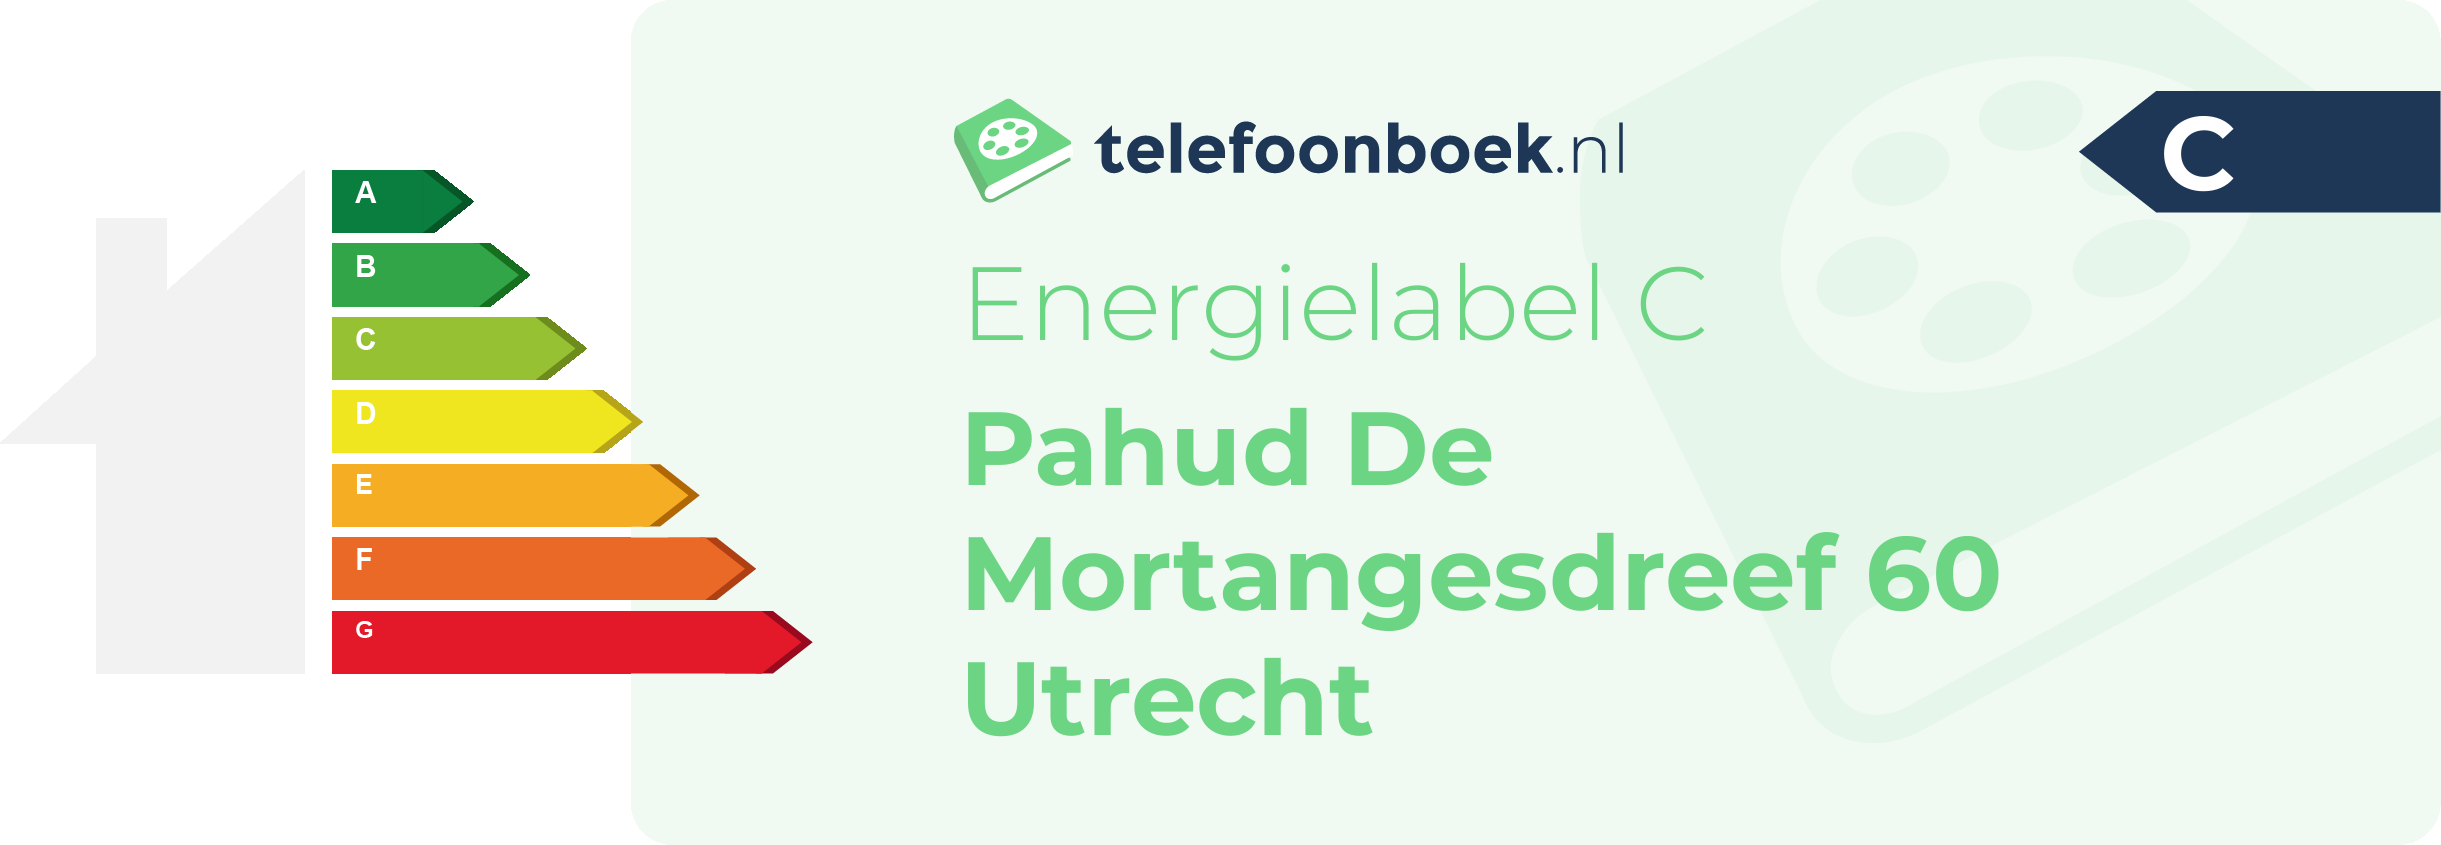 Energielabel Pahud De Mortangesdreef 60 Utrecht